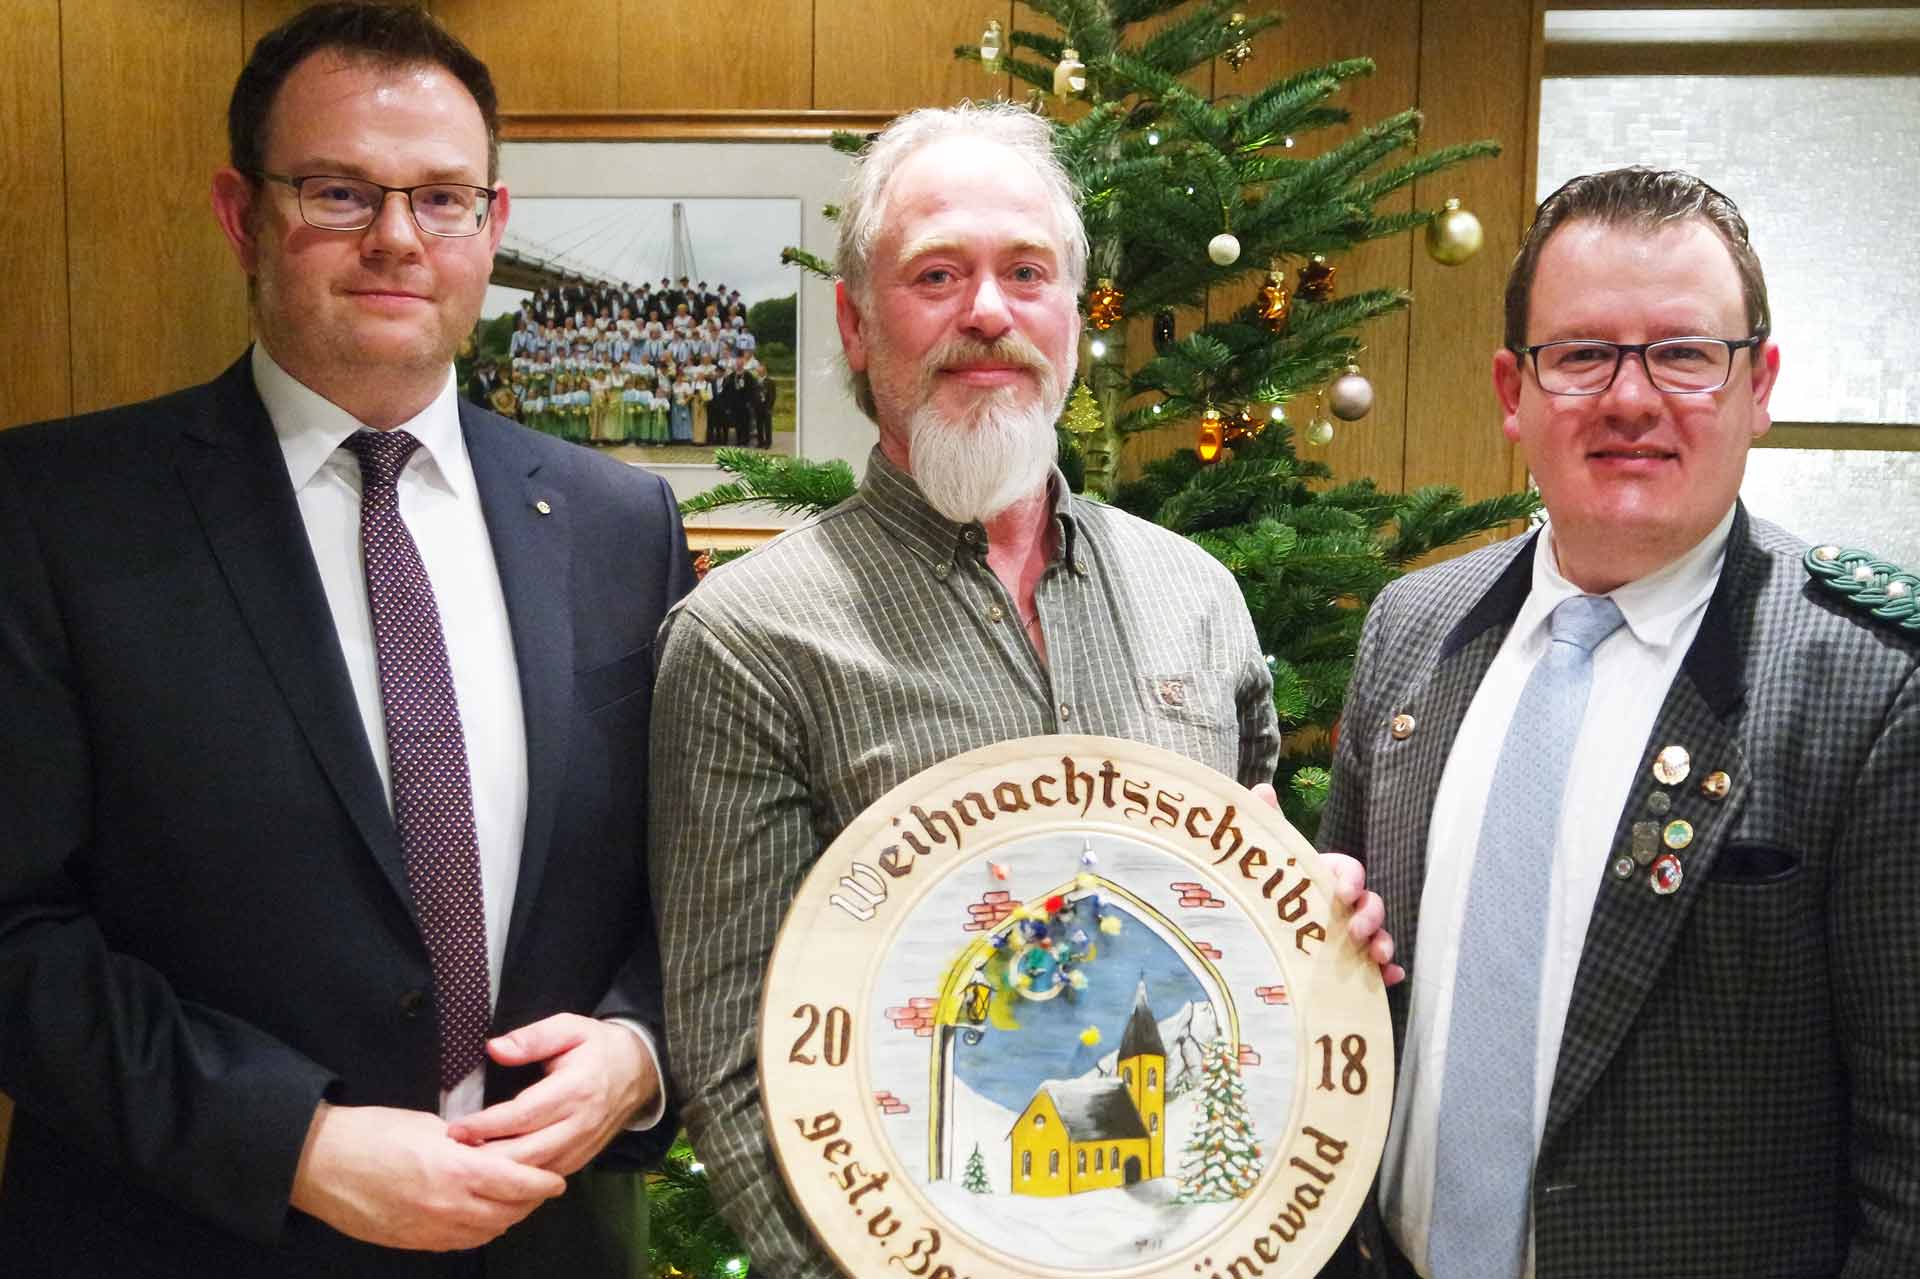 v.l.: Dr. Benedikt Grünewald - Stifter der Weihnachtsscheibe -, Gewinner Walter Maag und Schützenmeister Andreas Diermeier (Foto: Reinhold Meny)